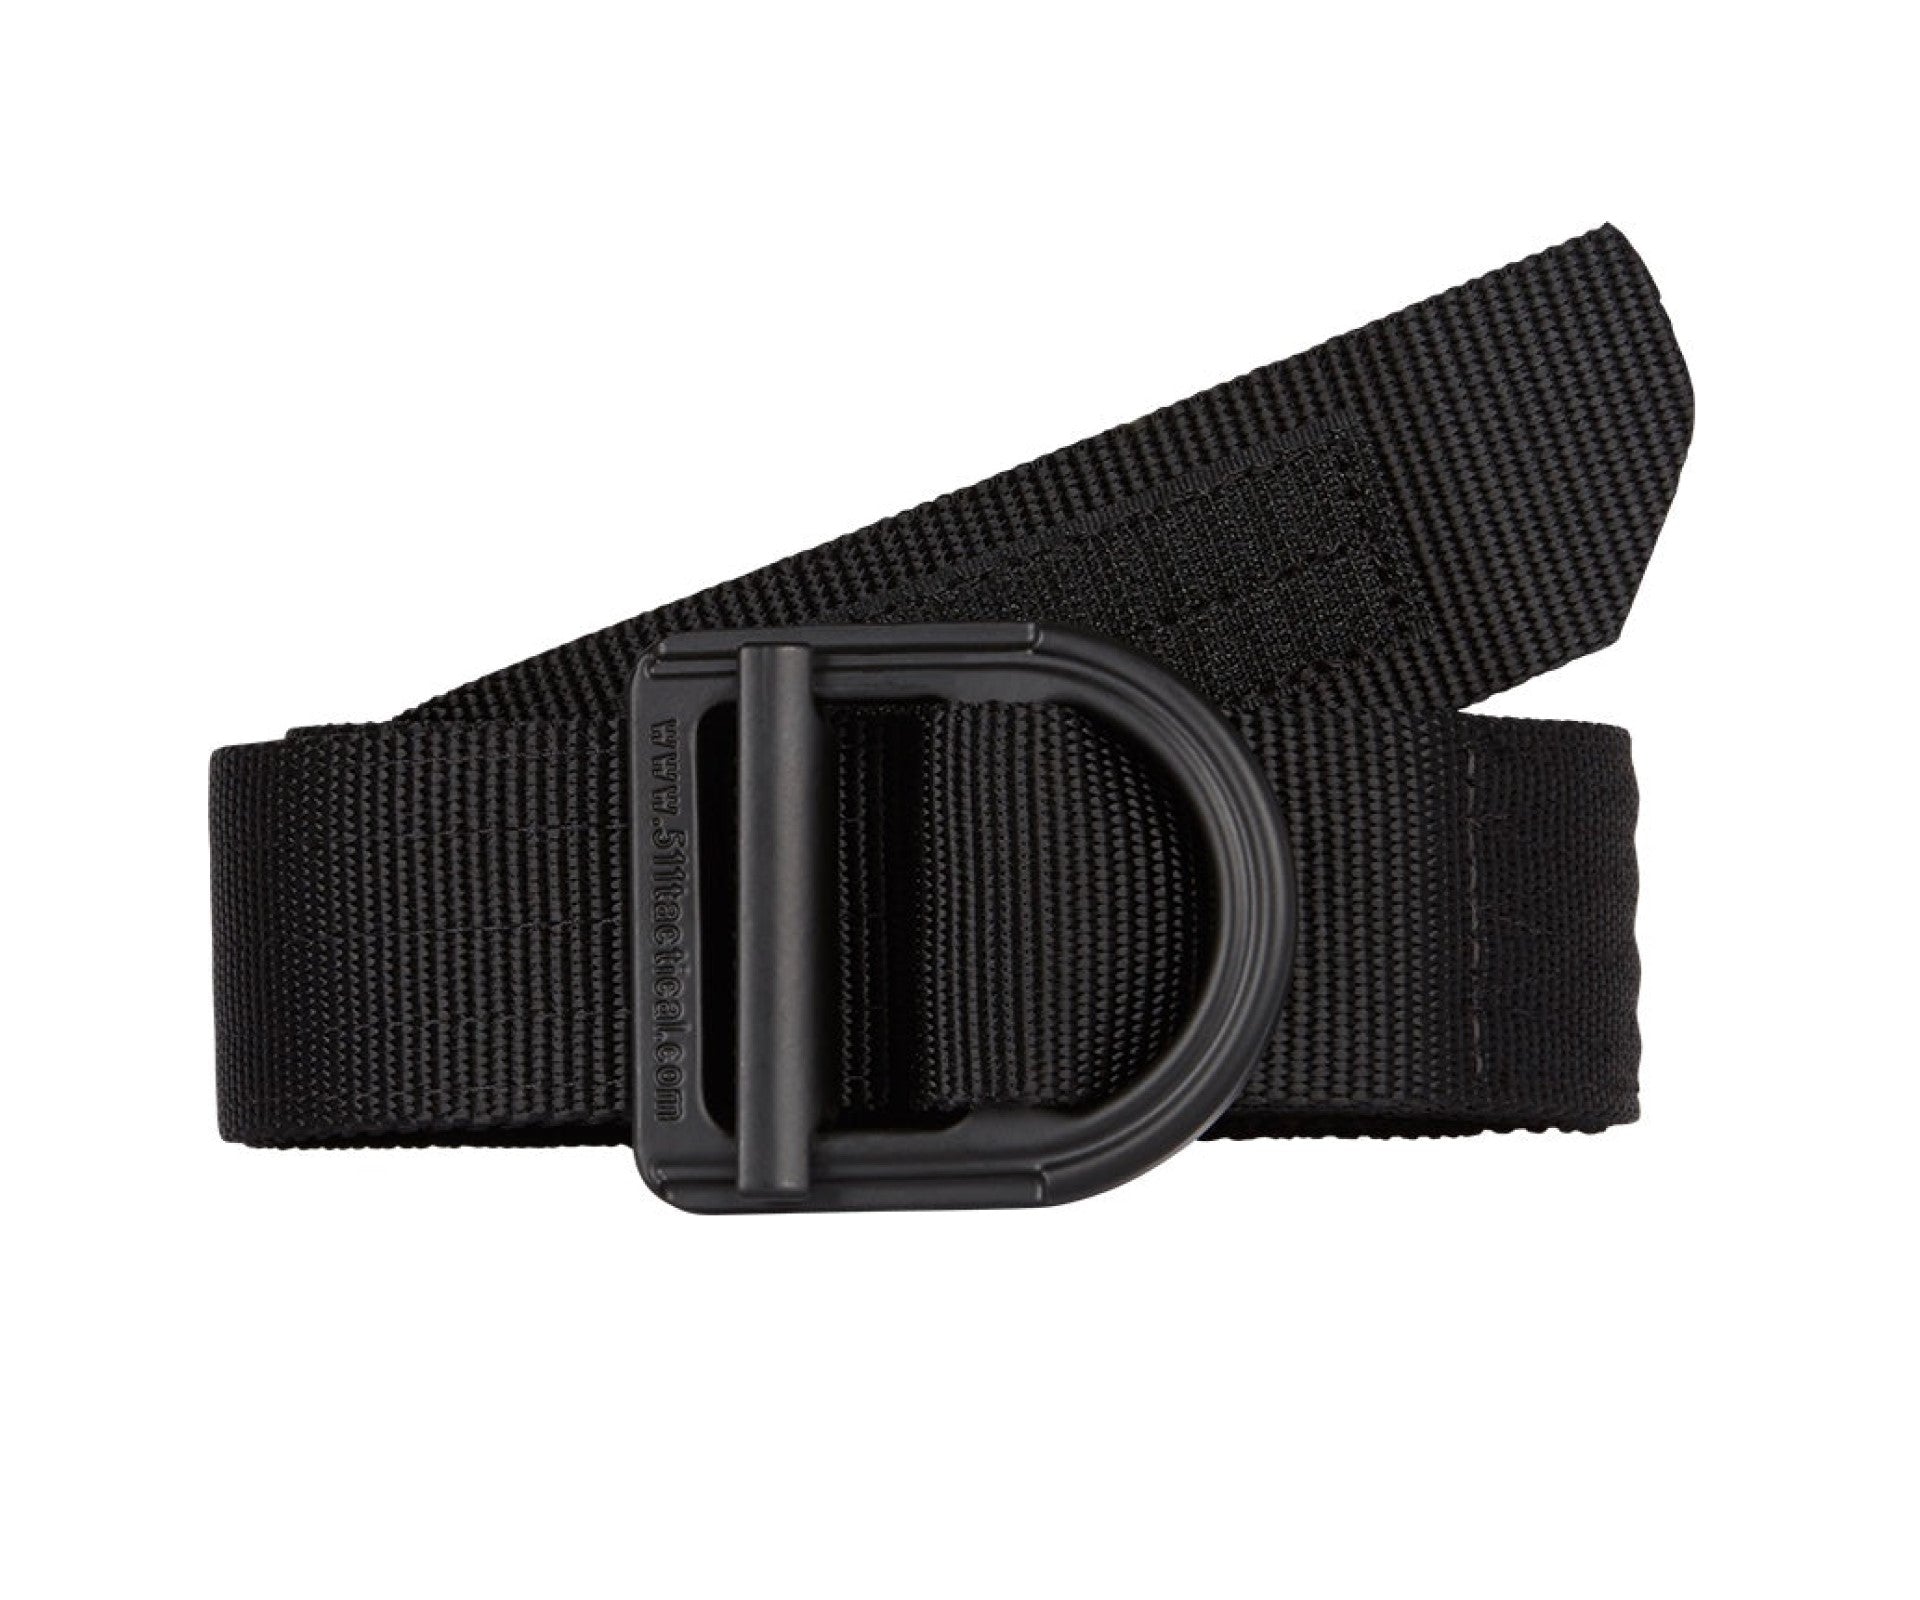 5.11 Tactical 1.5" Trainer Belt - Work World - Workwear, Work Boots, Safety Gear